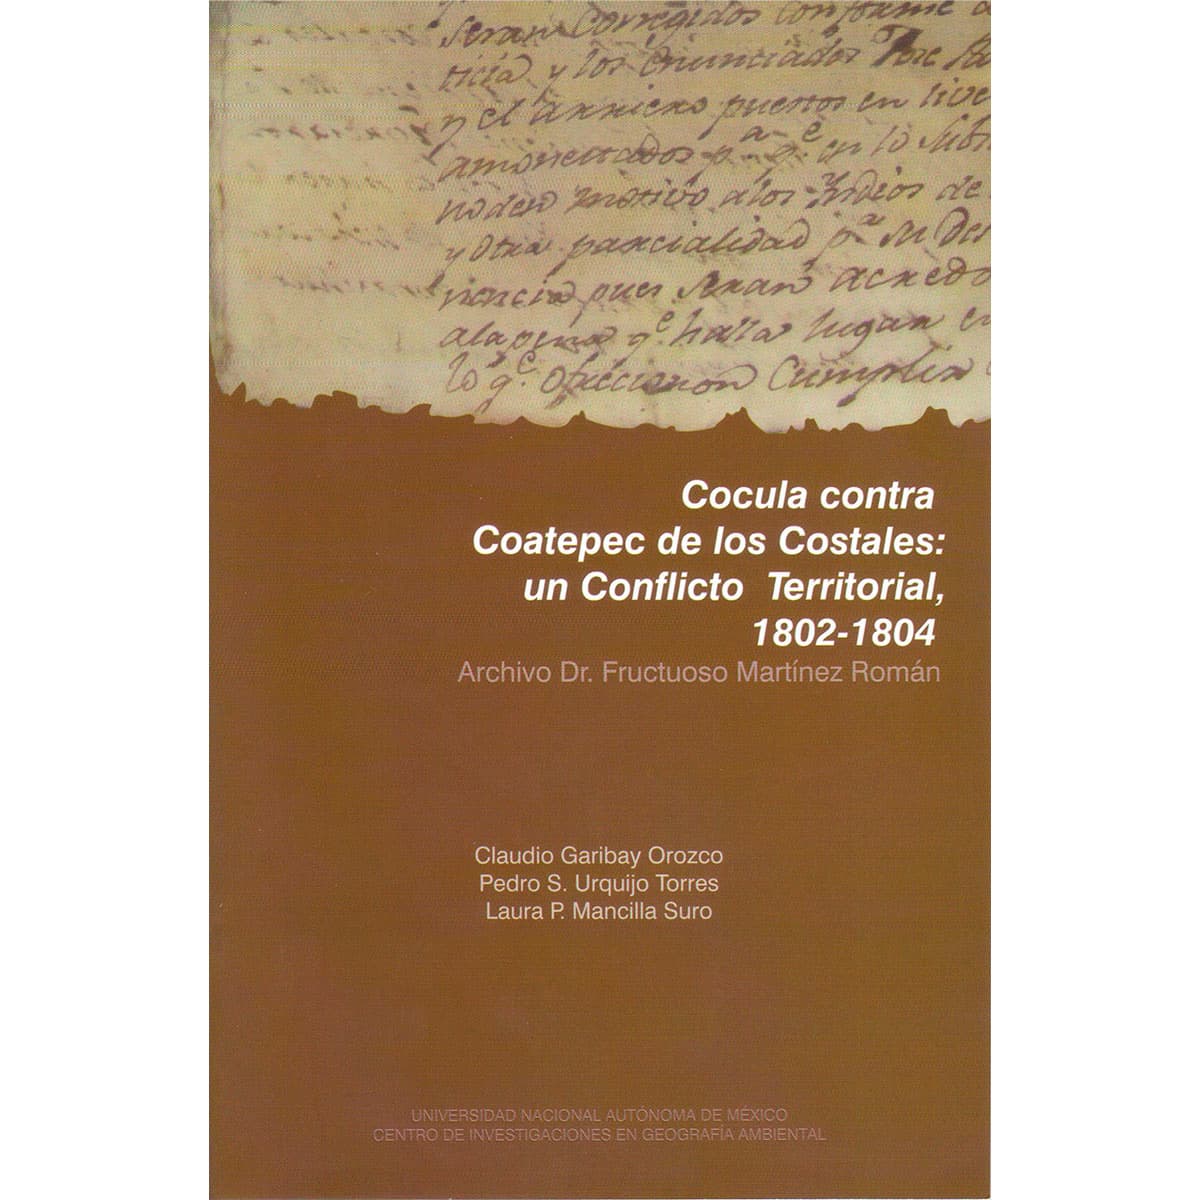 COCULA CONTRA COATEPEC DE LOS COSTALES: UN CONFLICTO TERRITORIAL, 1802-1804. ARCHIVO DR. FRUCTUOSO MARTÍNEZ ROMÁN